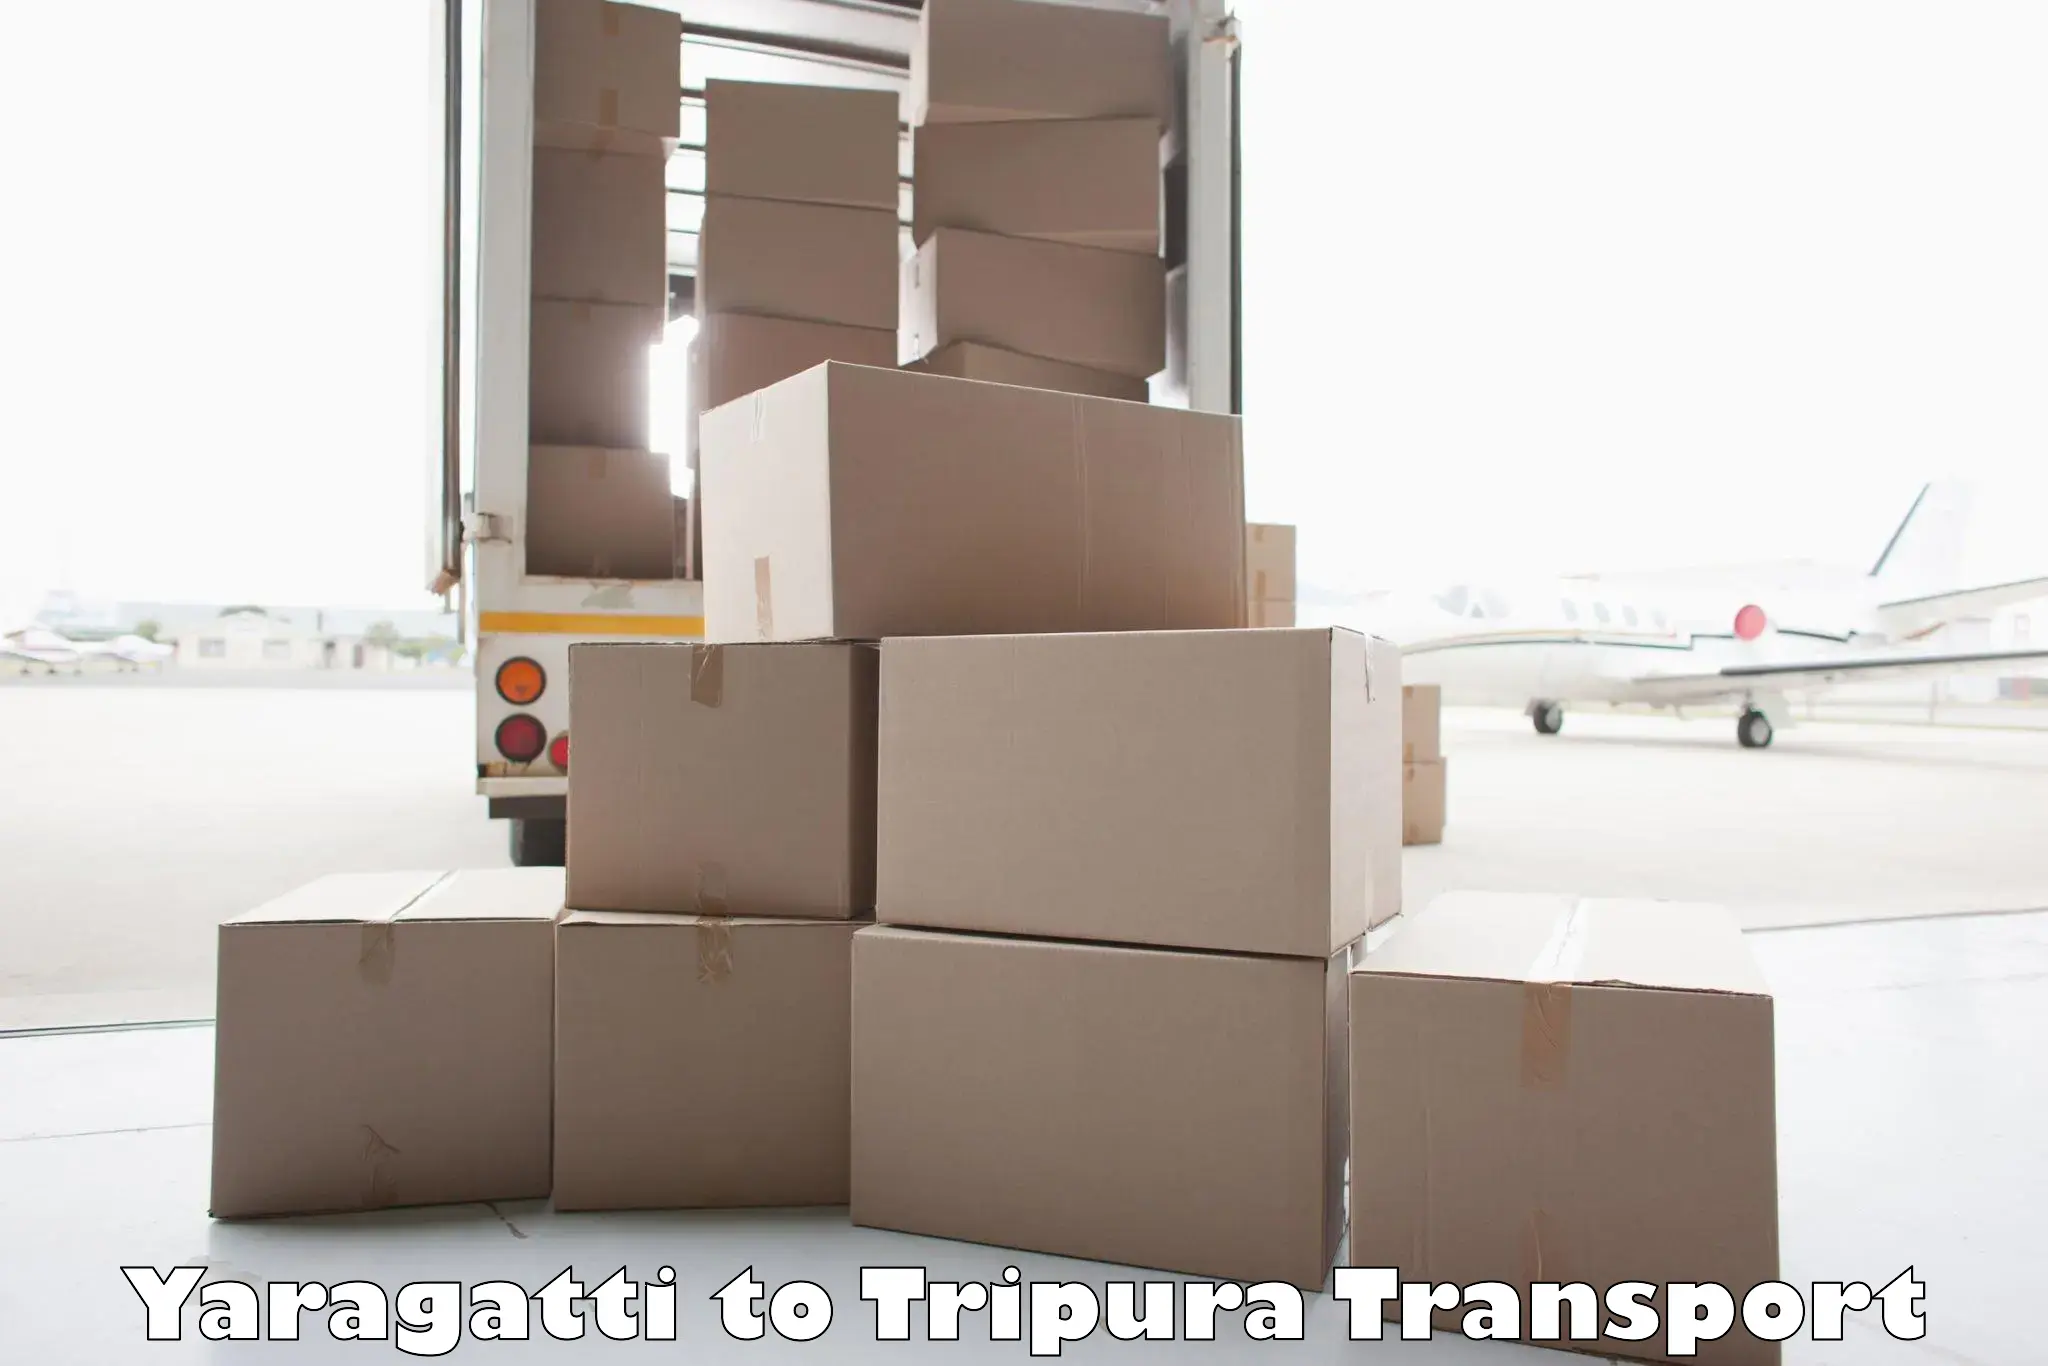 Nearest transport service in Yaragatti to IIIT Agartala